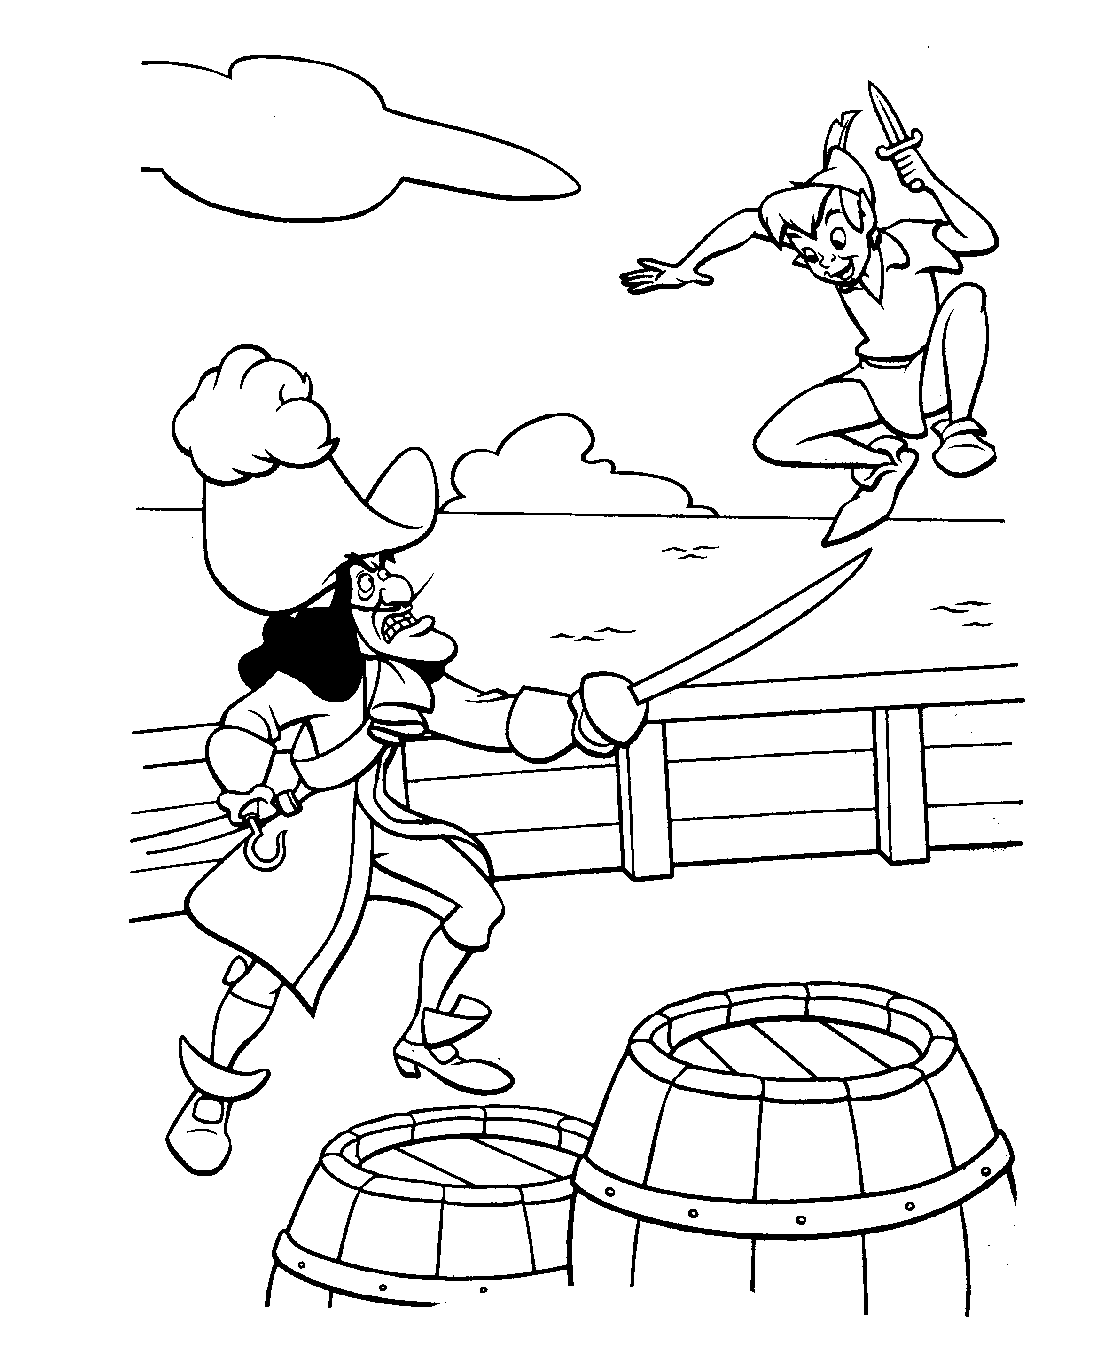 Página para colorir do Capitão Gancho a lutar com o Peter Pan!